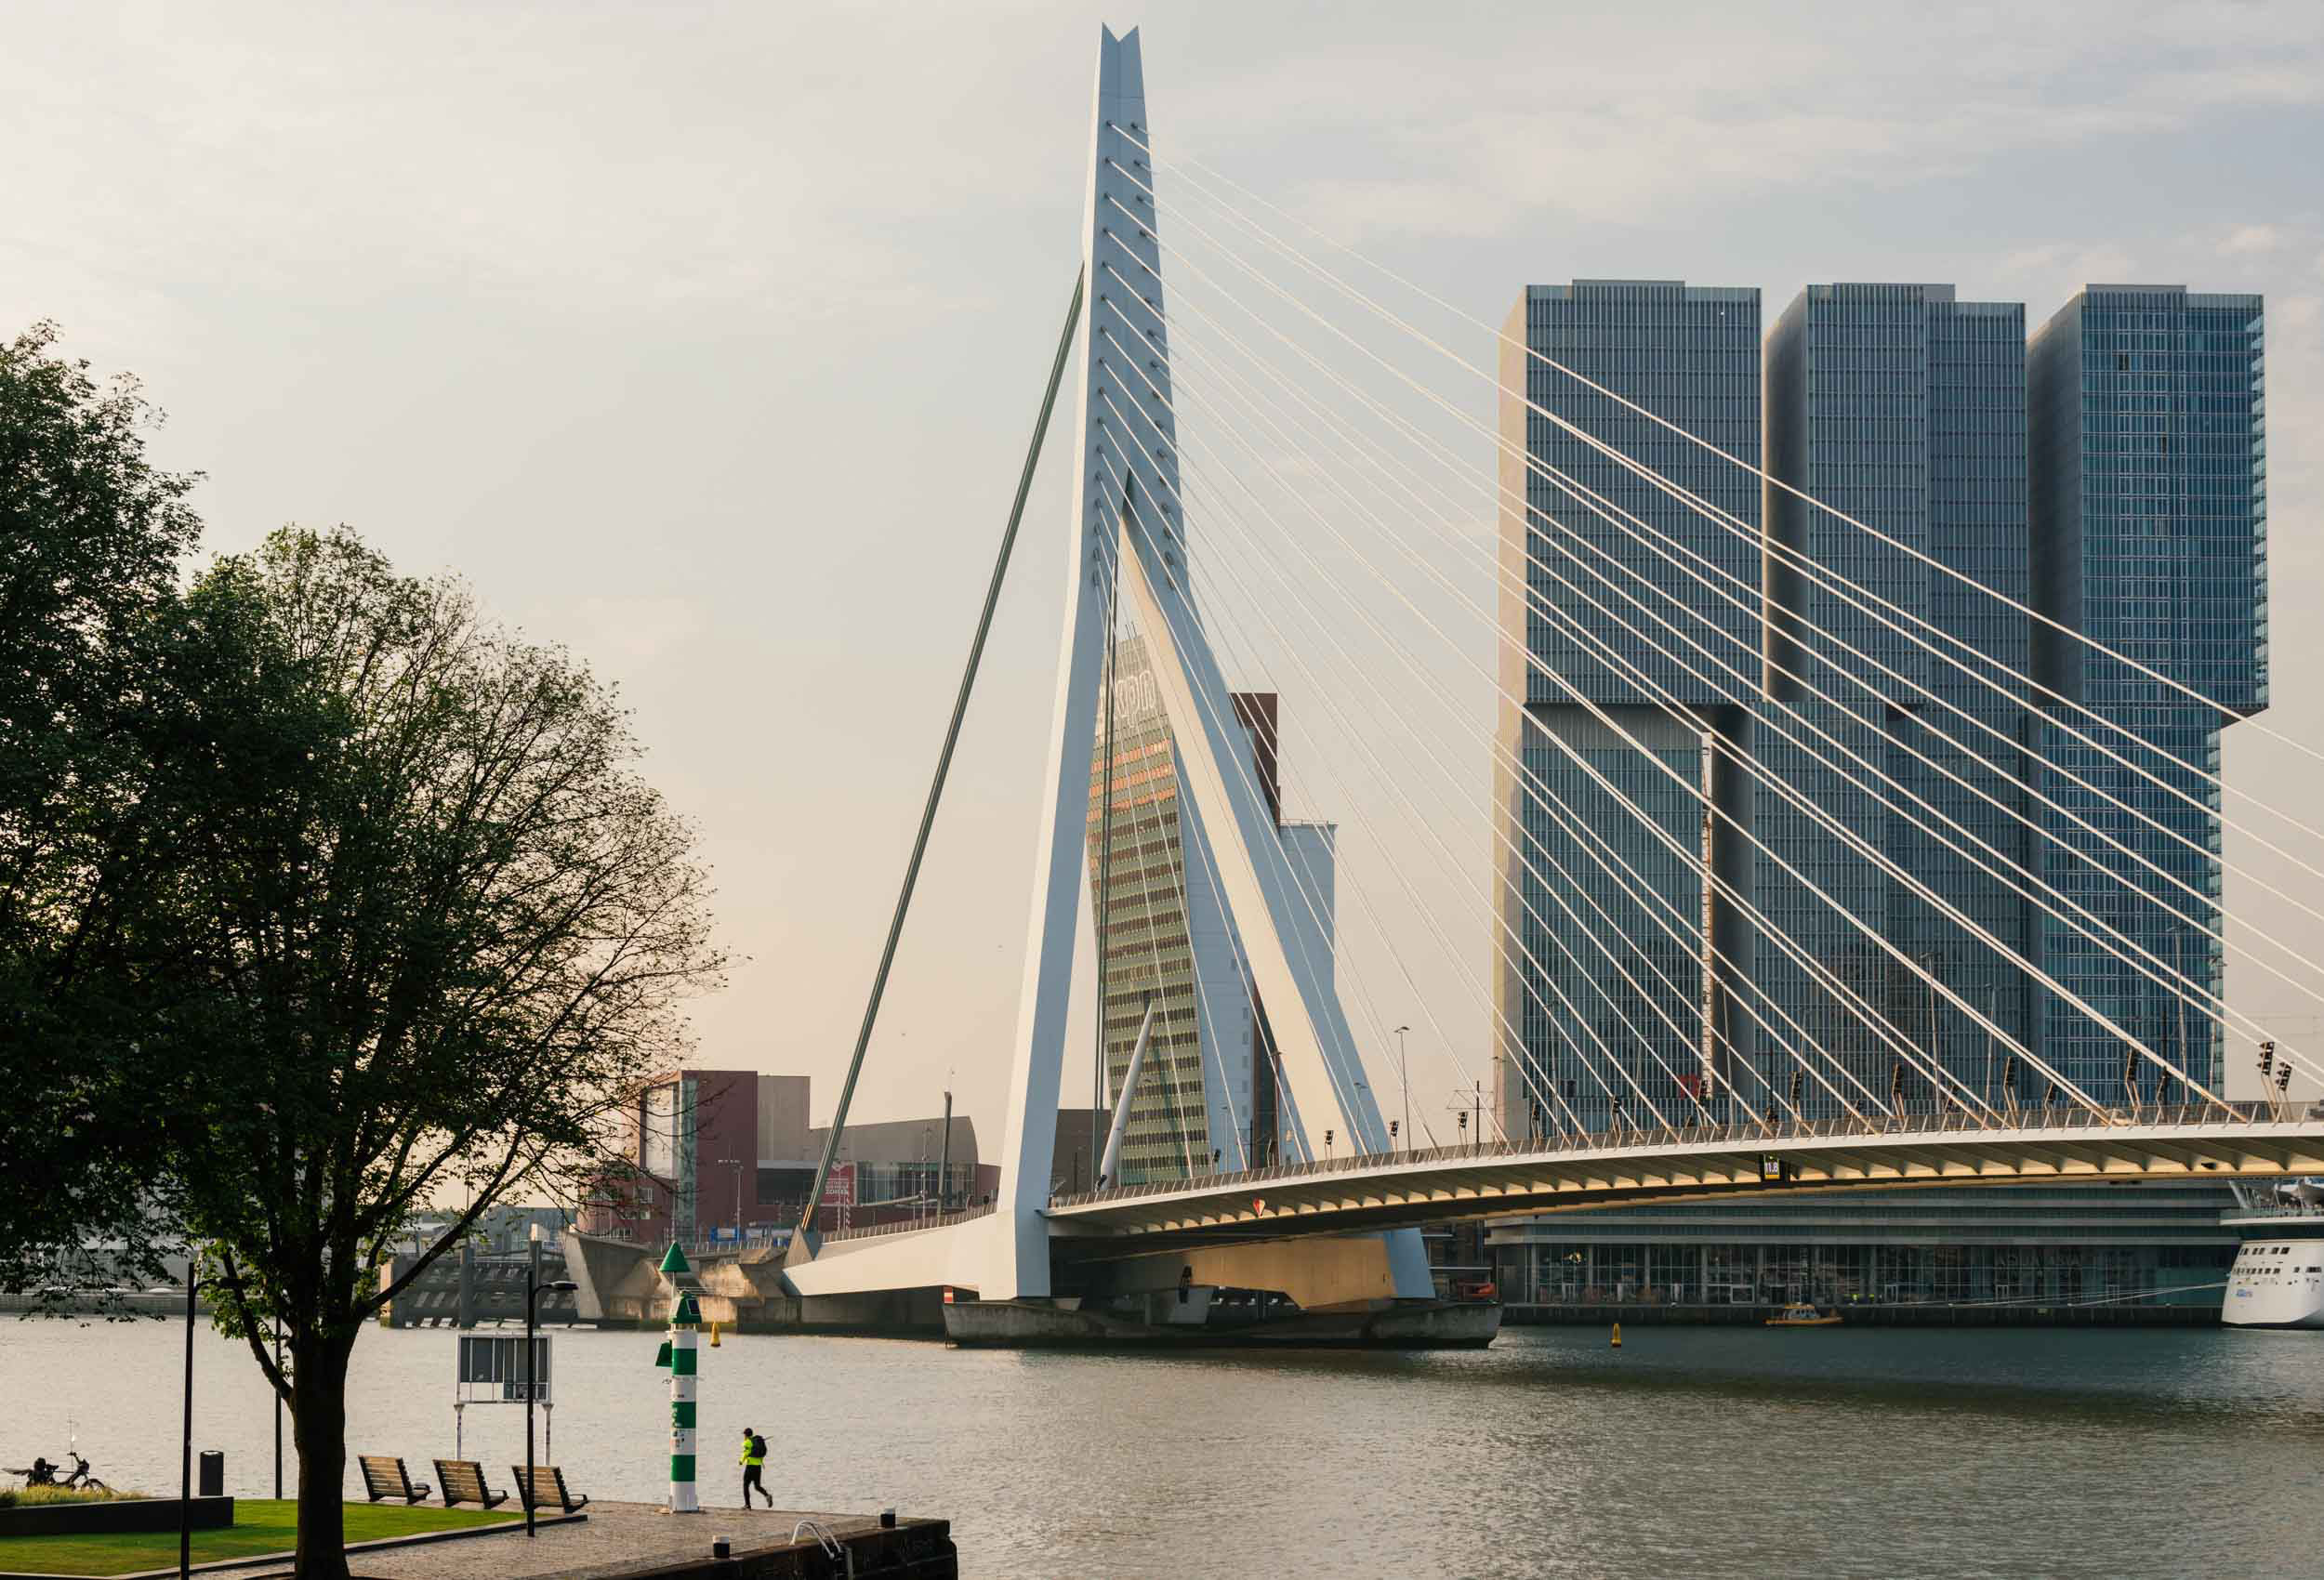 erasmus-bridge-wilhelminakade-rotterdam-netherlands-holland